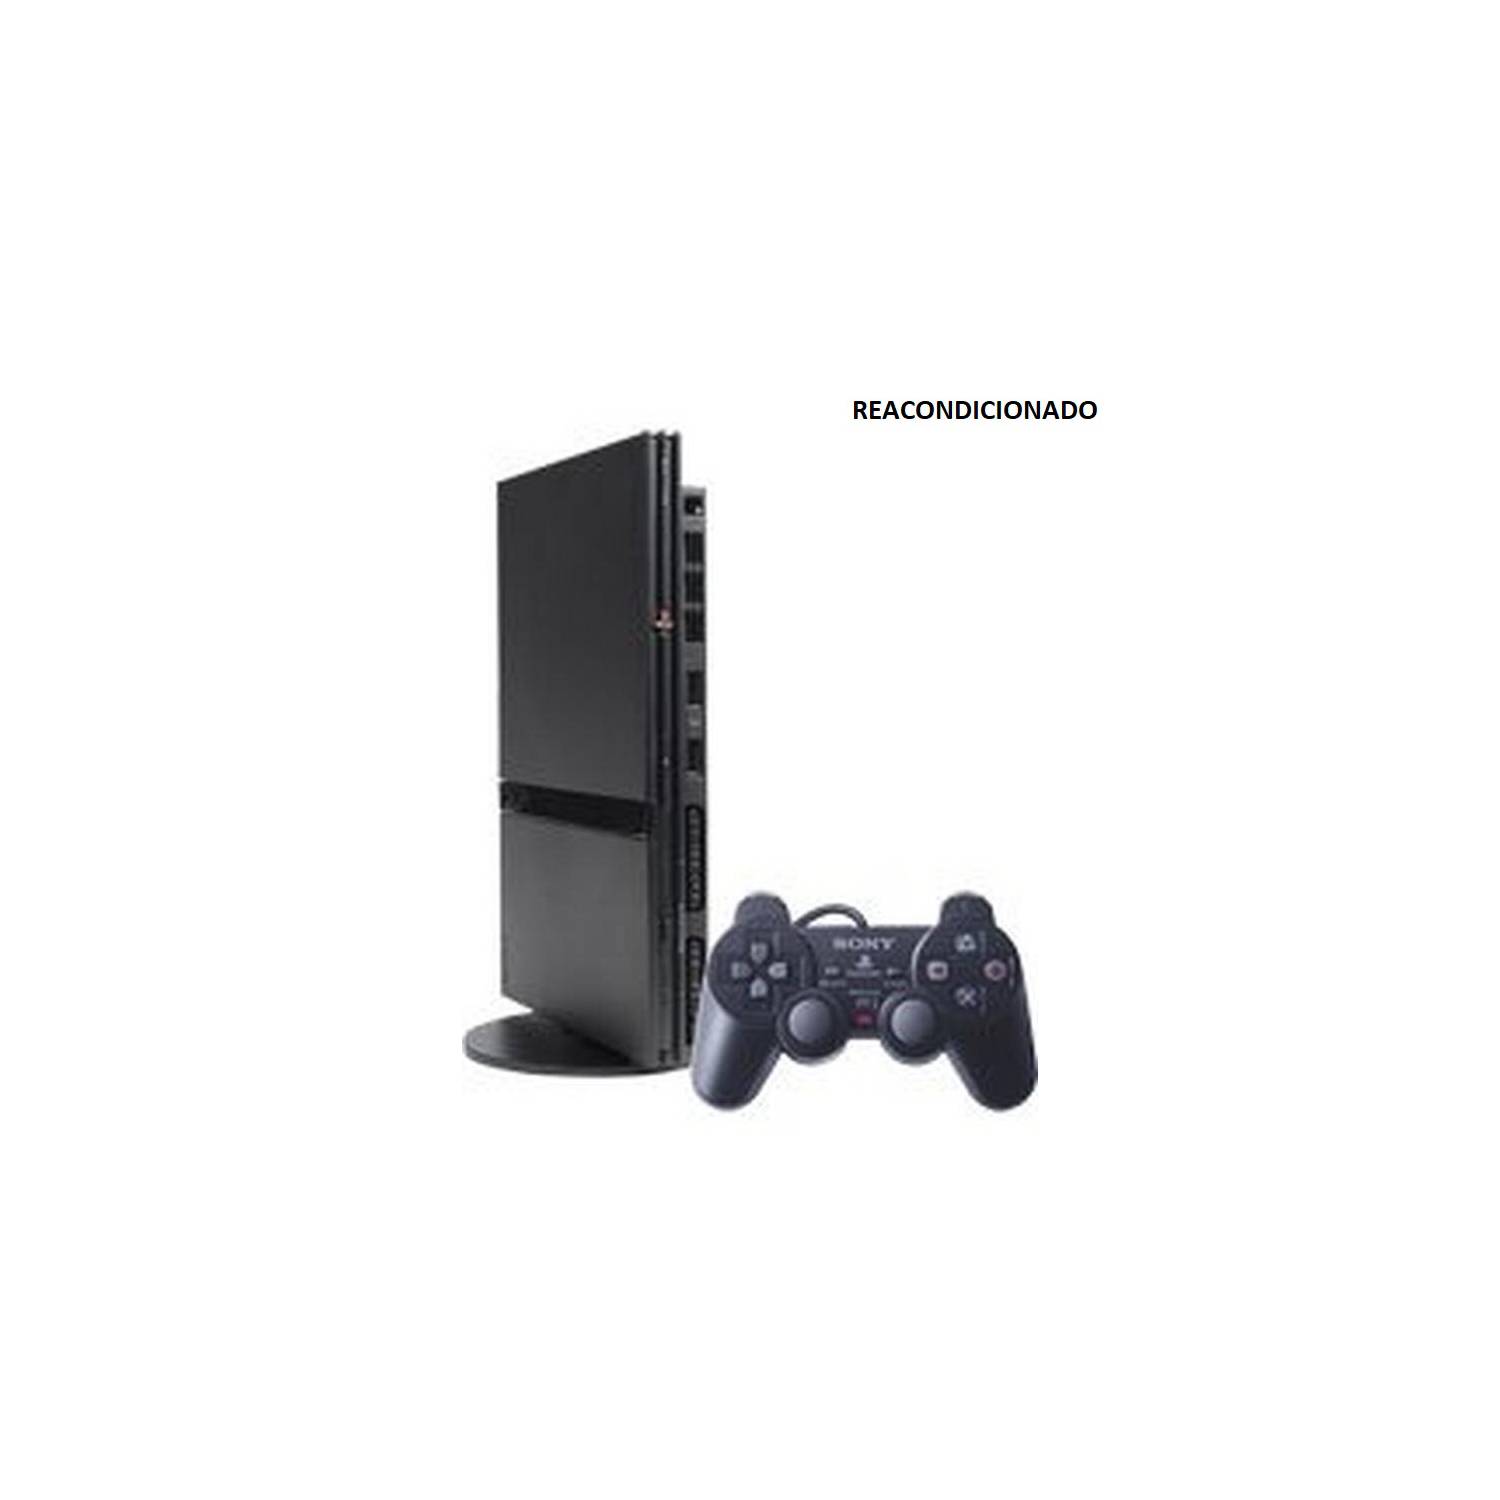 Consola PS2 Reacondicionado SONY 